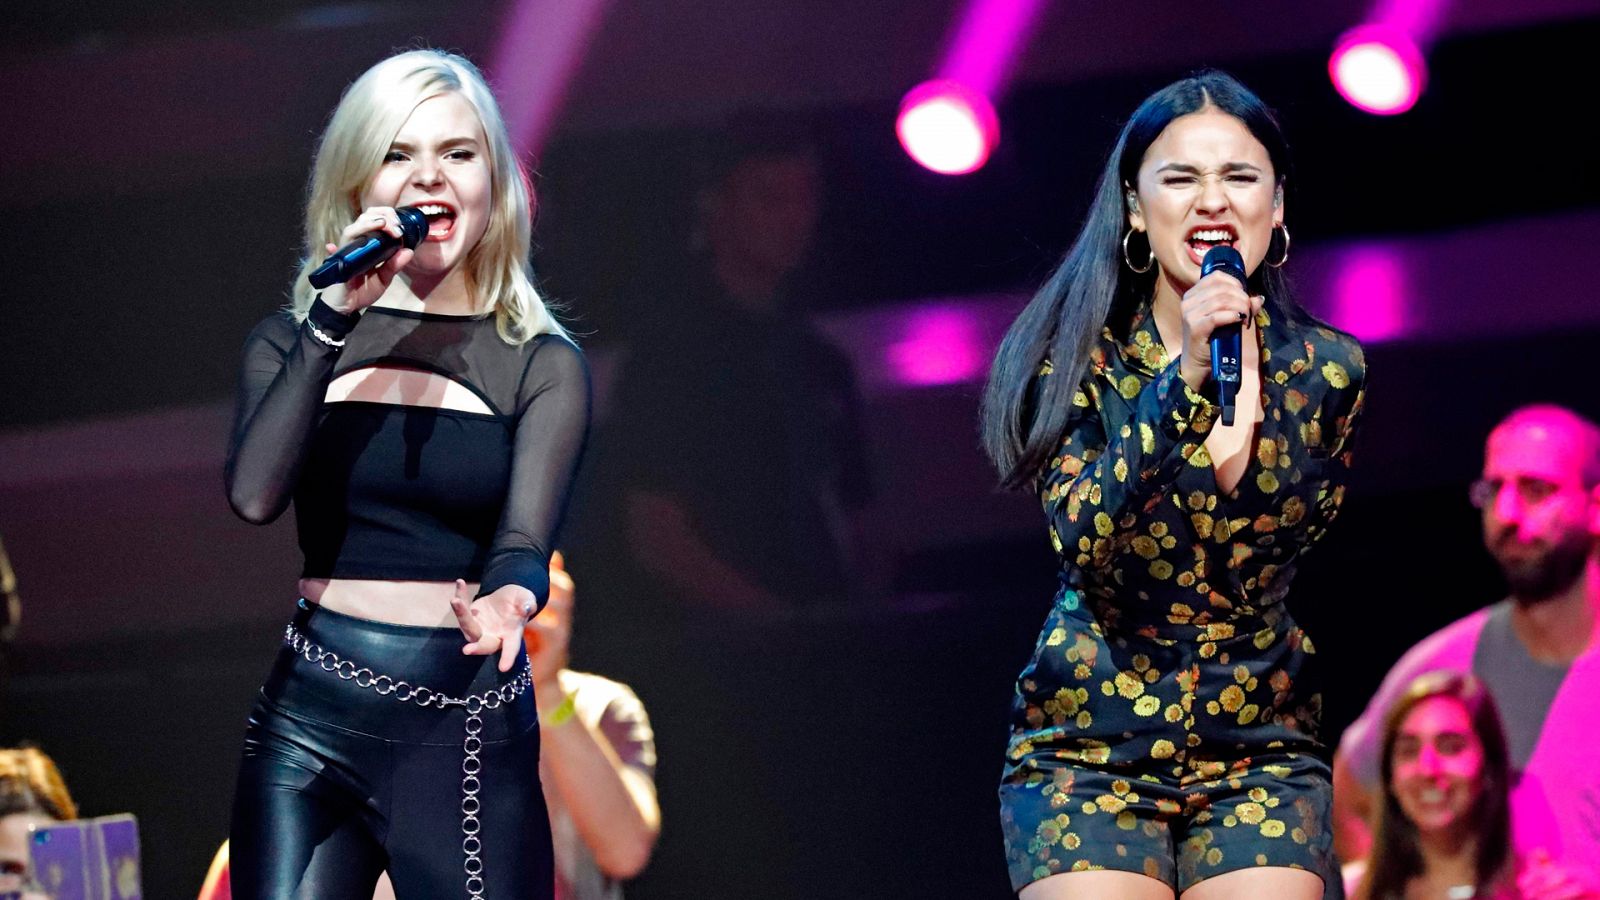 Final Eurovisión 2019 - Alemania: S!sters canta "Sister"